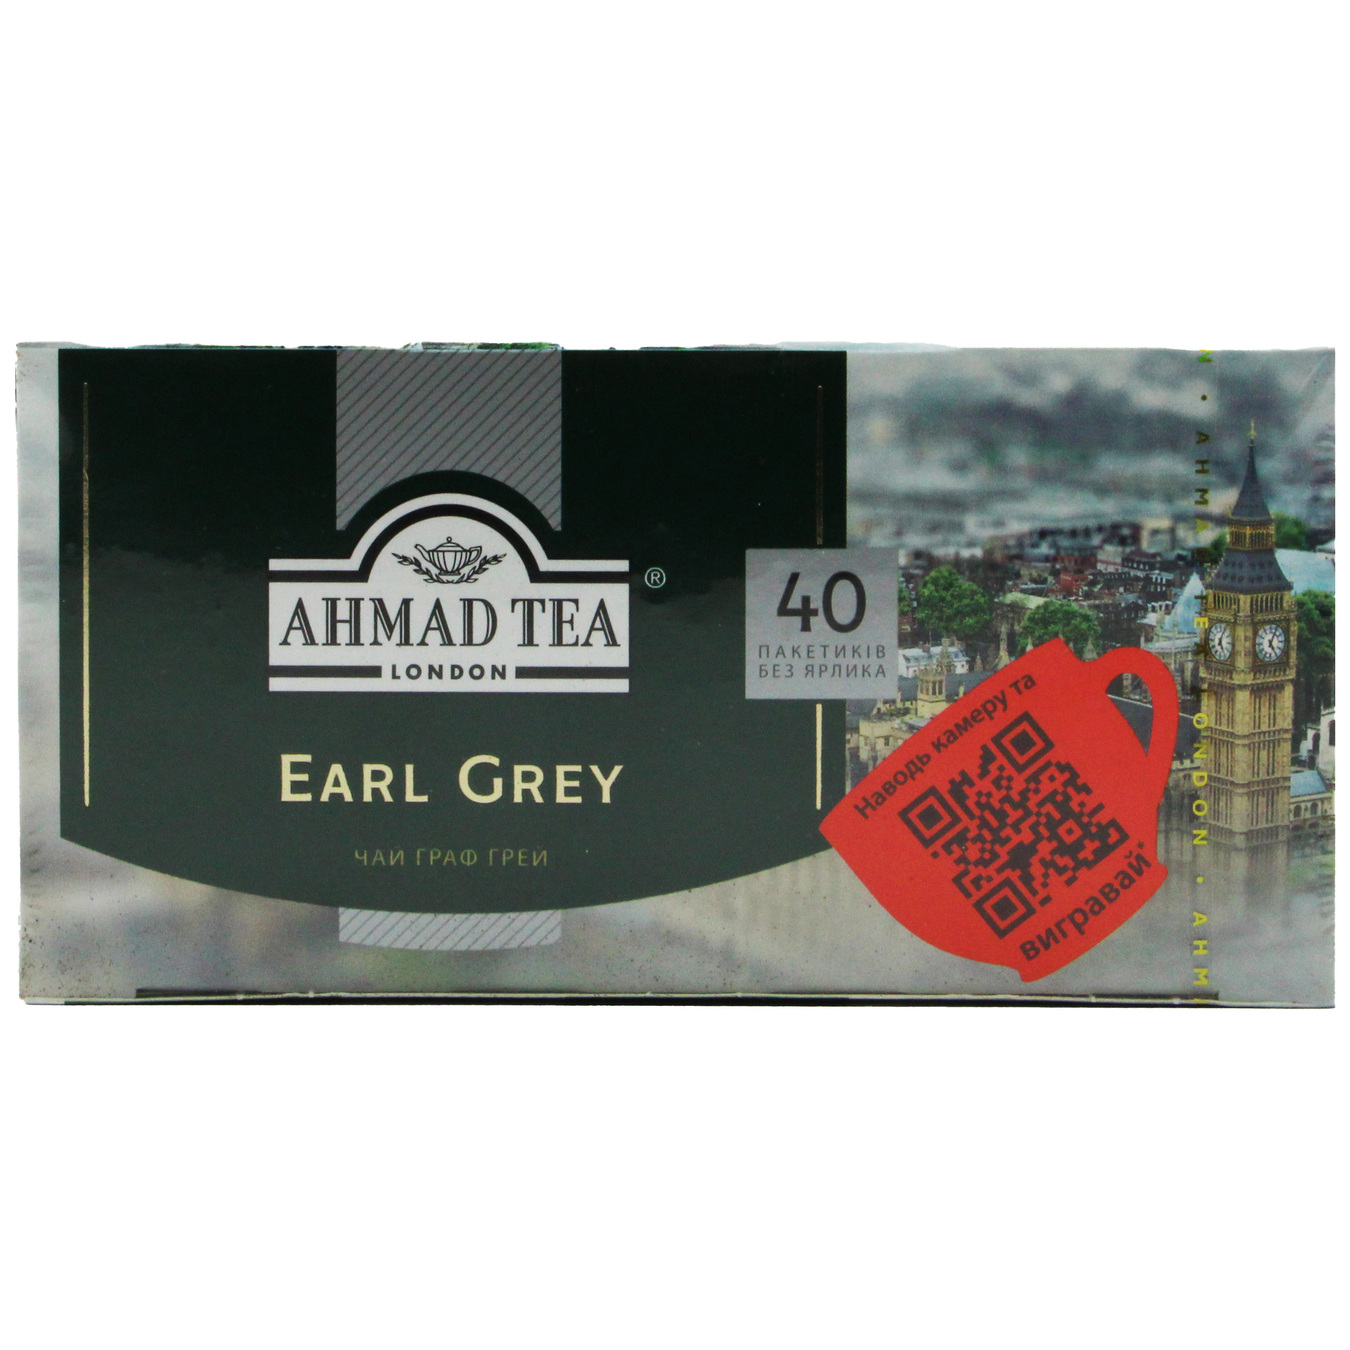 Ahmad Tea Earl Grey Black Tea in tea bags 40pcs 2g